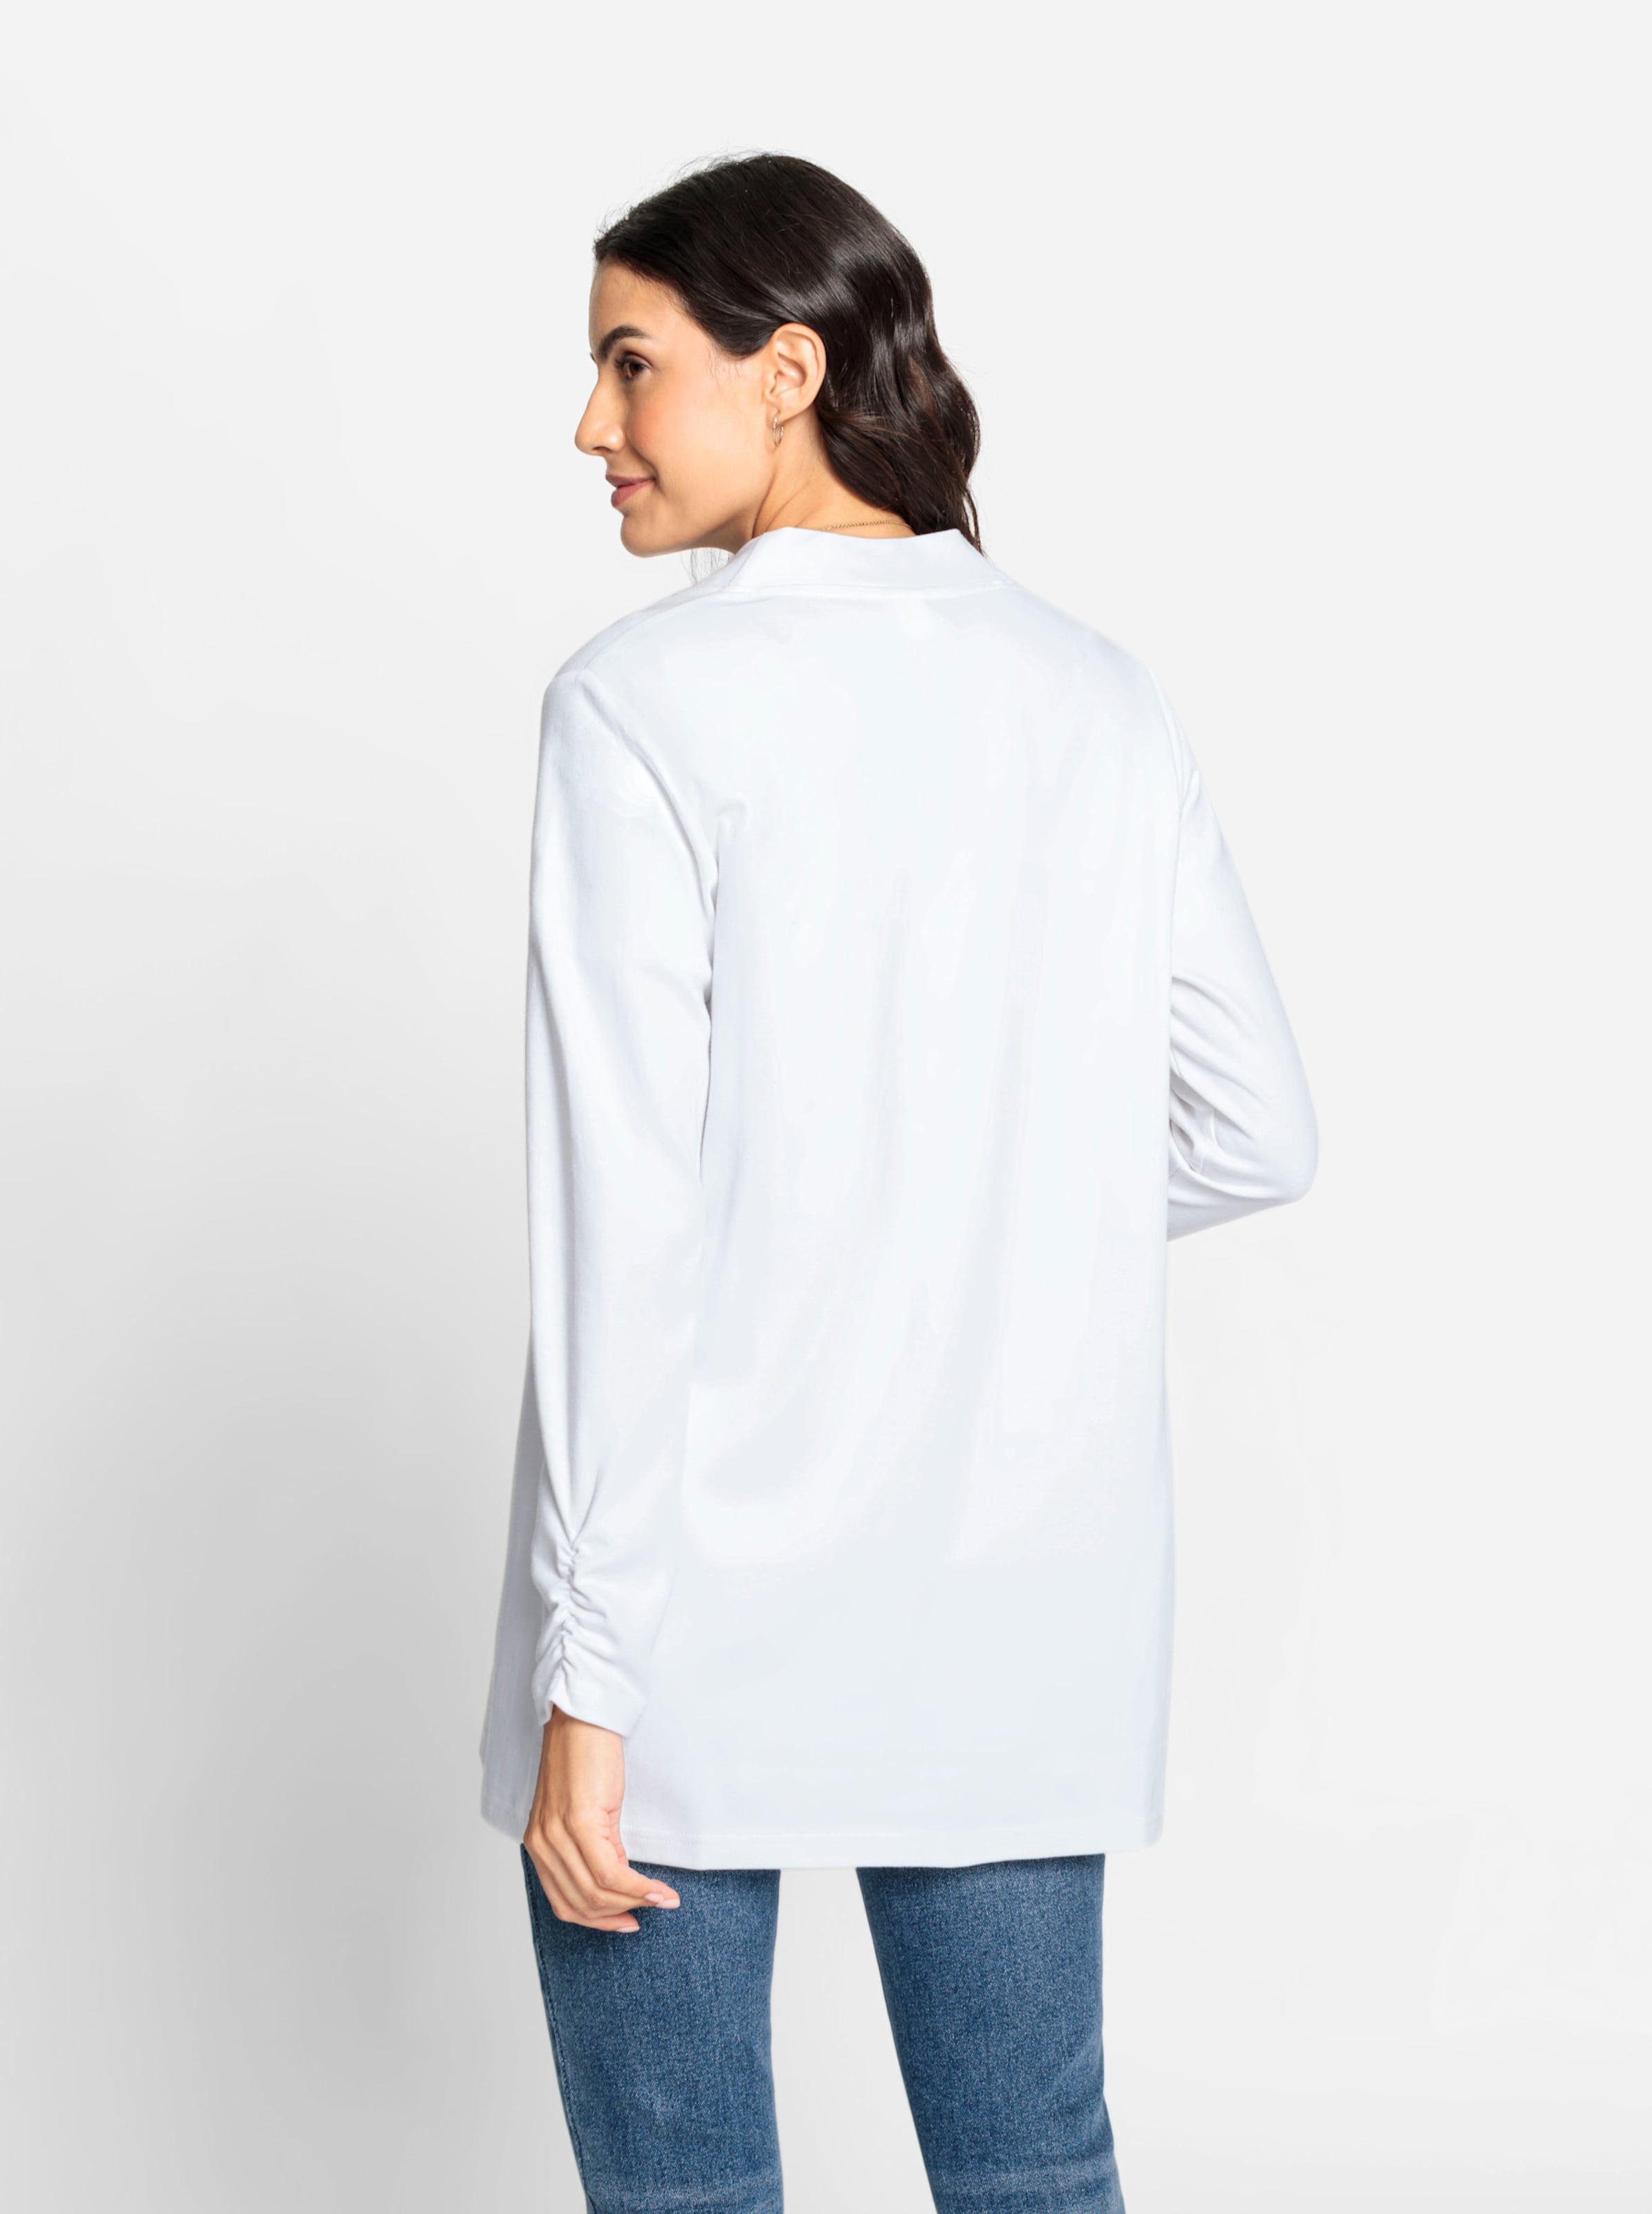 Tal der günstig Kaufen-Shirtjacke in weiß von heine. Shirtjacke in weiß von heine <![CDATA[Wenn Sie nach einem Multitalent für Ihre Garderobe suchen, dann ist die Shirtjacke genau die Richtige! In offener, etwas längerer Form mit Raffung am Abschluss der langen Ärm